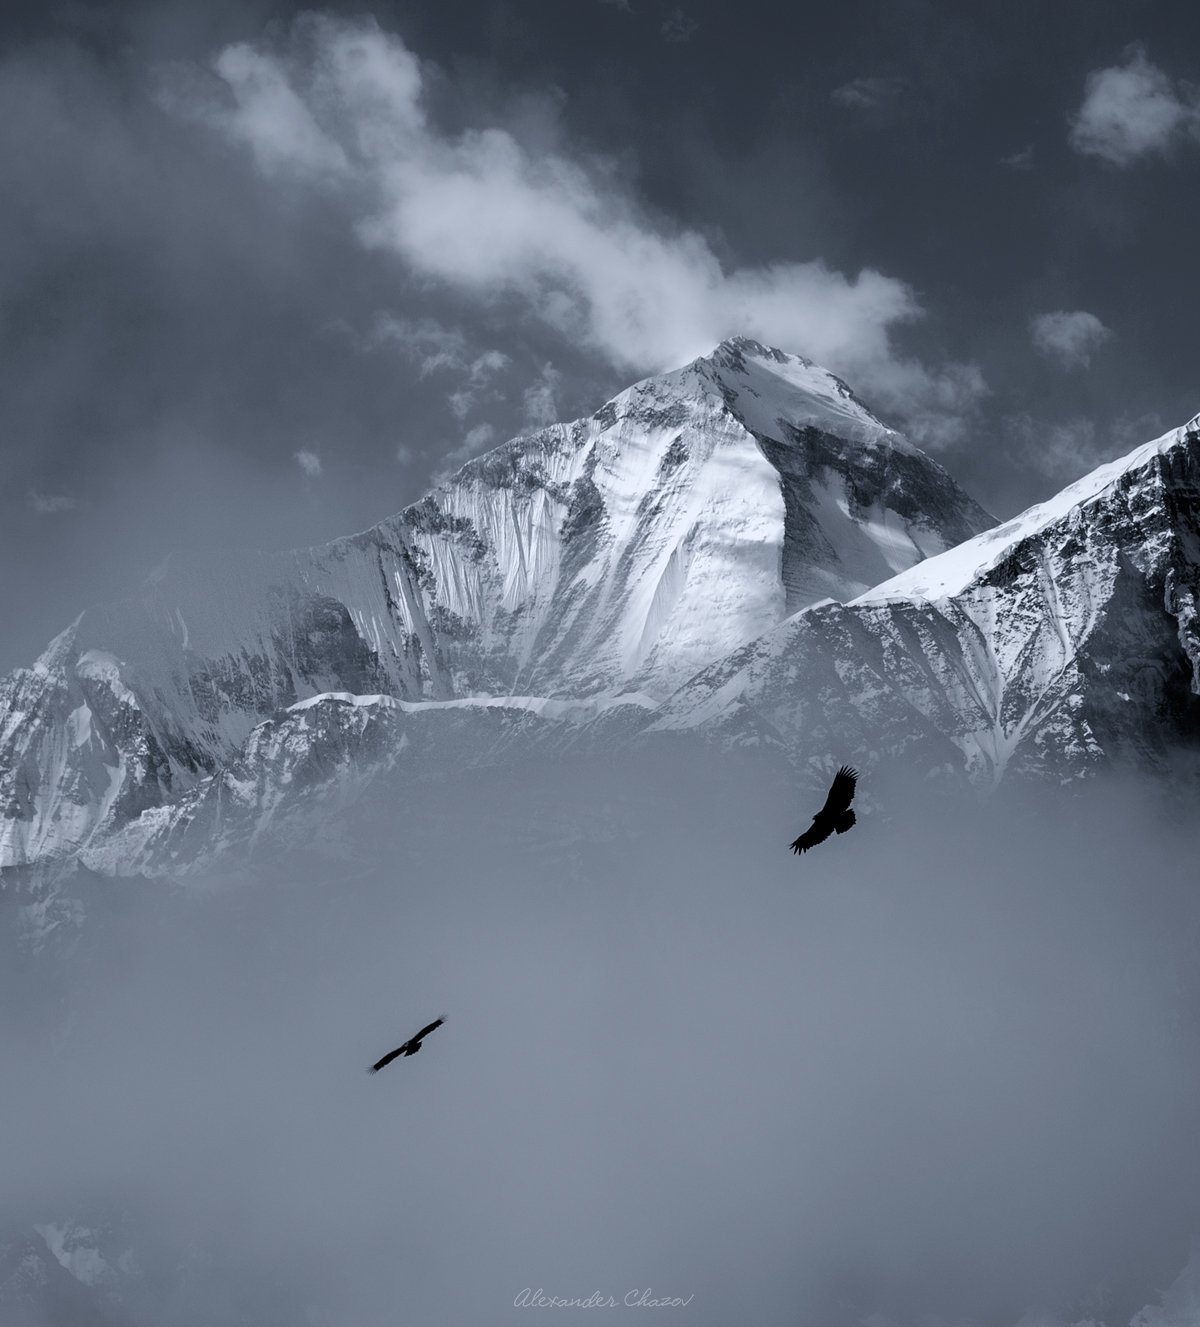 гималаи, непал, дхаулагири, альпинизм, восхождение, пейзаж, горы, природа, вершина, гора, Александр Чазов